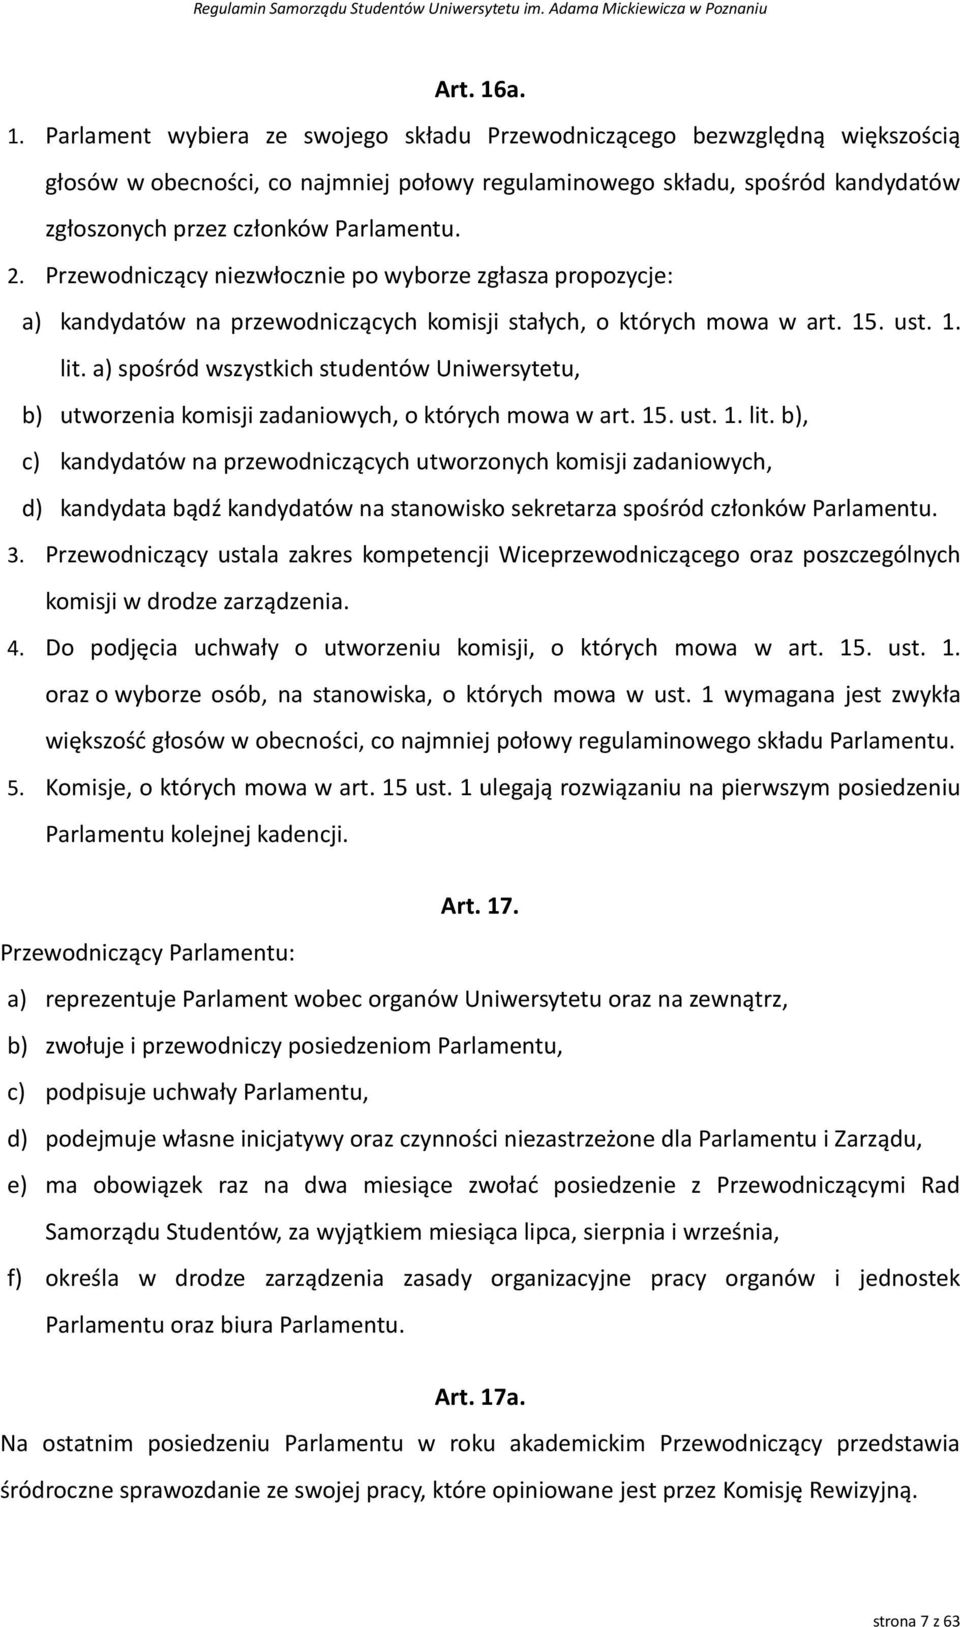 Parlamentu. 2. Przewodniczący niezwłocznie po wyborze zgłasza propozycje: a) kandydatów na przewodniczących komisji stałych, o których mowa w art. 15. ust. 1. lit.